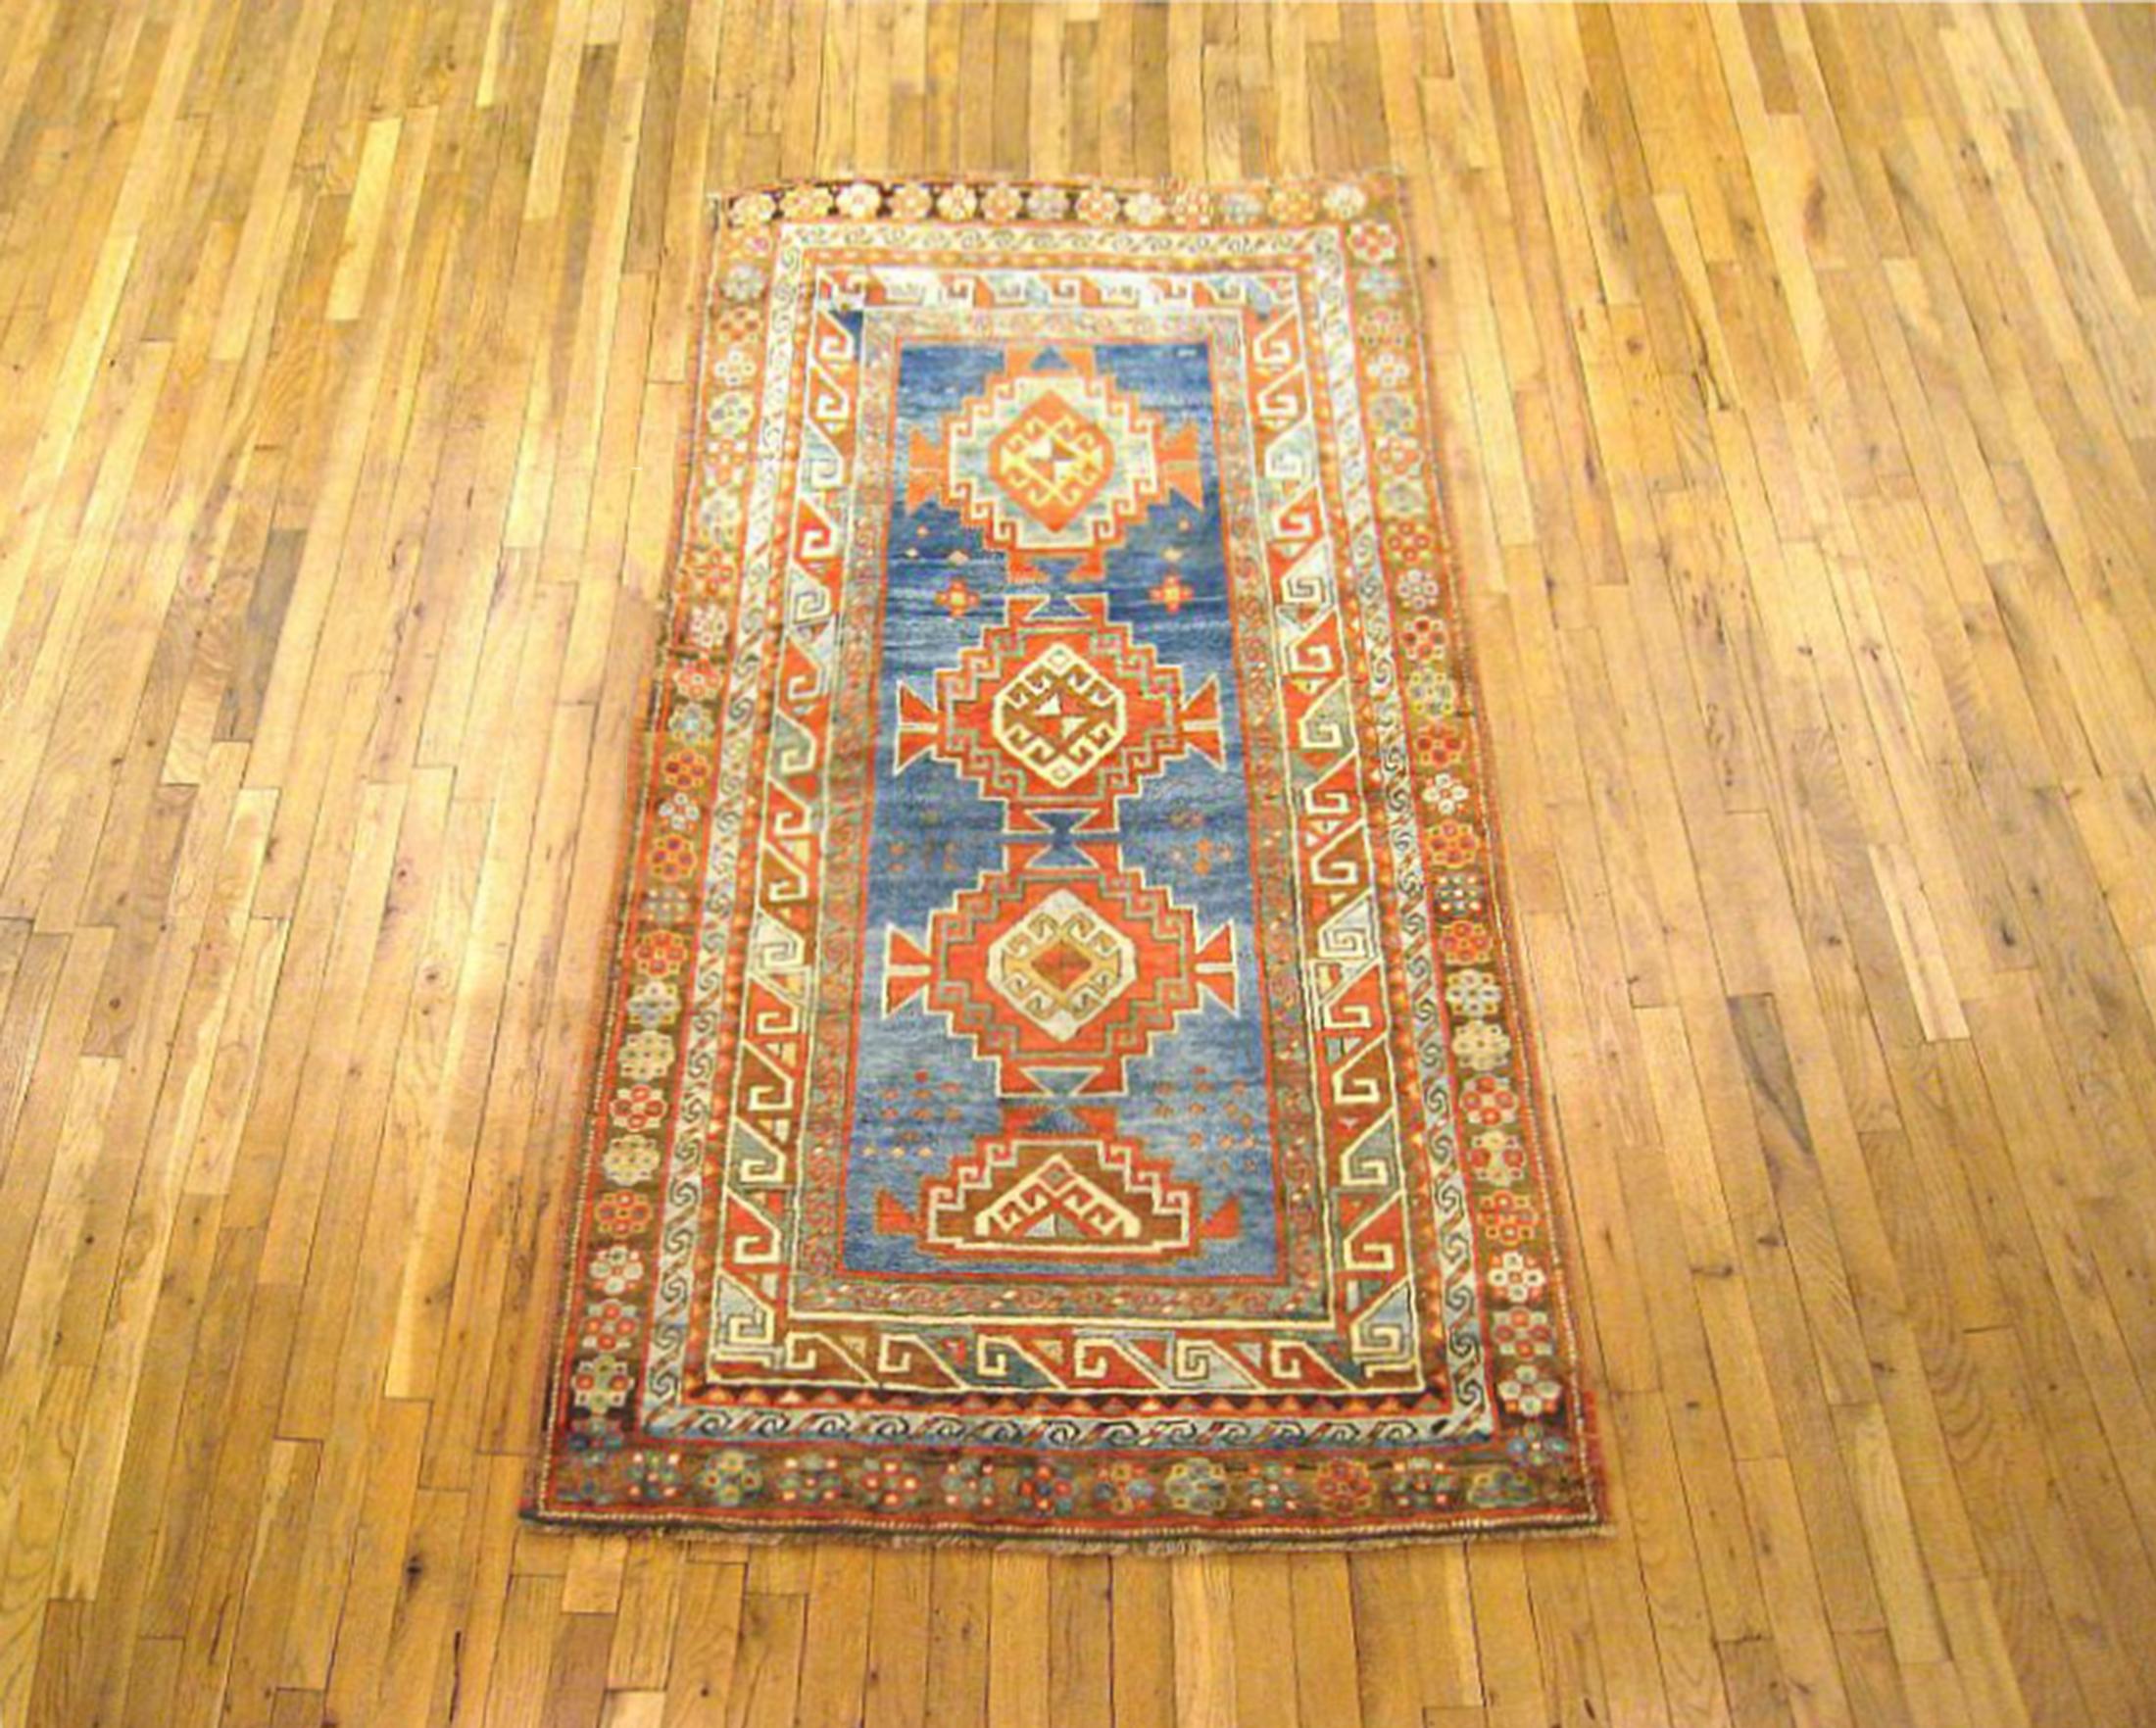 Antiker kaukasischer kasachischer Orientteppich, Läufergröße, um 1920

Ein einzigartiger antiker kaukasischer Kazak-Oriental-Teppich, handgeknüpft mit weichem Wollflor. Dieser schöne, handgeknüpfte Wollteppich zeigt mehrere Medaillons mit